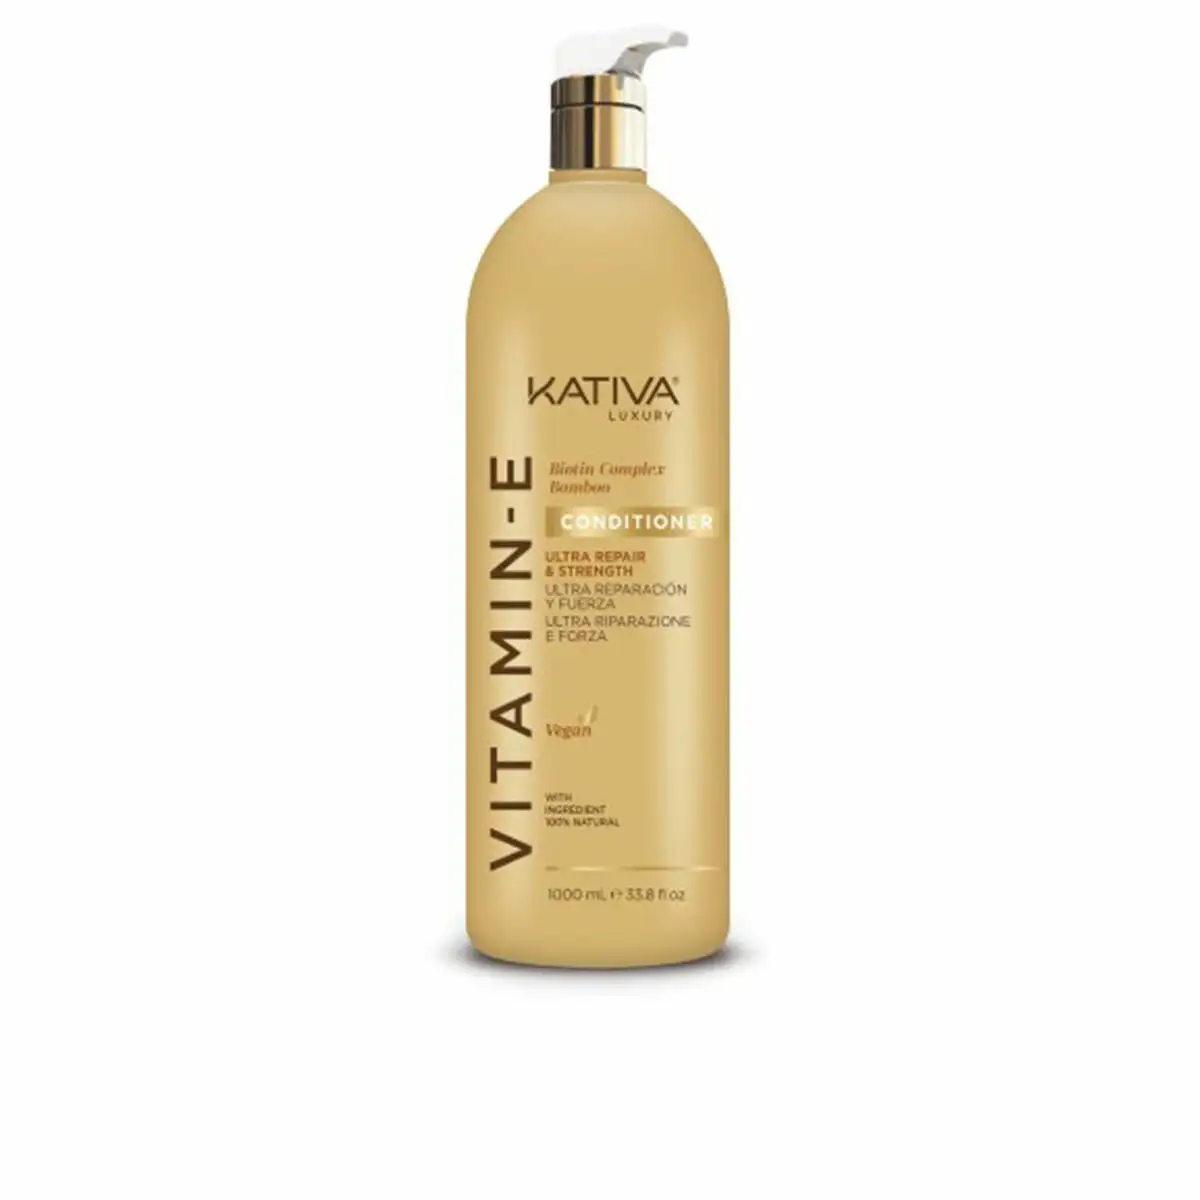 Apres shampooing kativa vitamina e 1 l_9232. Bienvenue chez DIAYTAR SENEGAL - Où Choisir est un Voyage. Plongez dans notre plateforme en ligne pour trouver des produits qui ajoutent de la couleur et de la texture à votre quotidien.